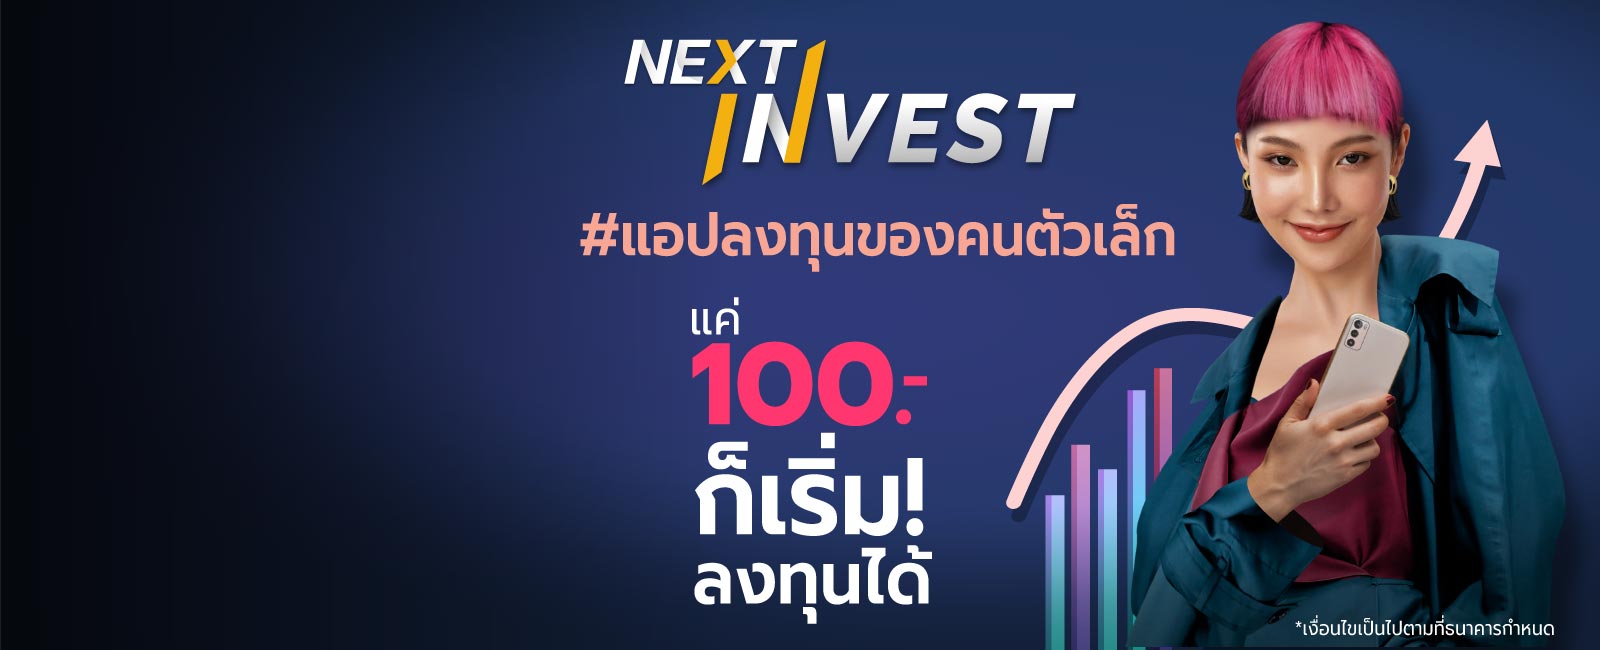 เปิดโลกการลงทุนกับ NEXT INVEST  รวมทุกเรื่องลงทุน ง่าย ครบ จบที่แอป Krungthai NEXT